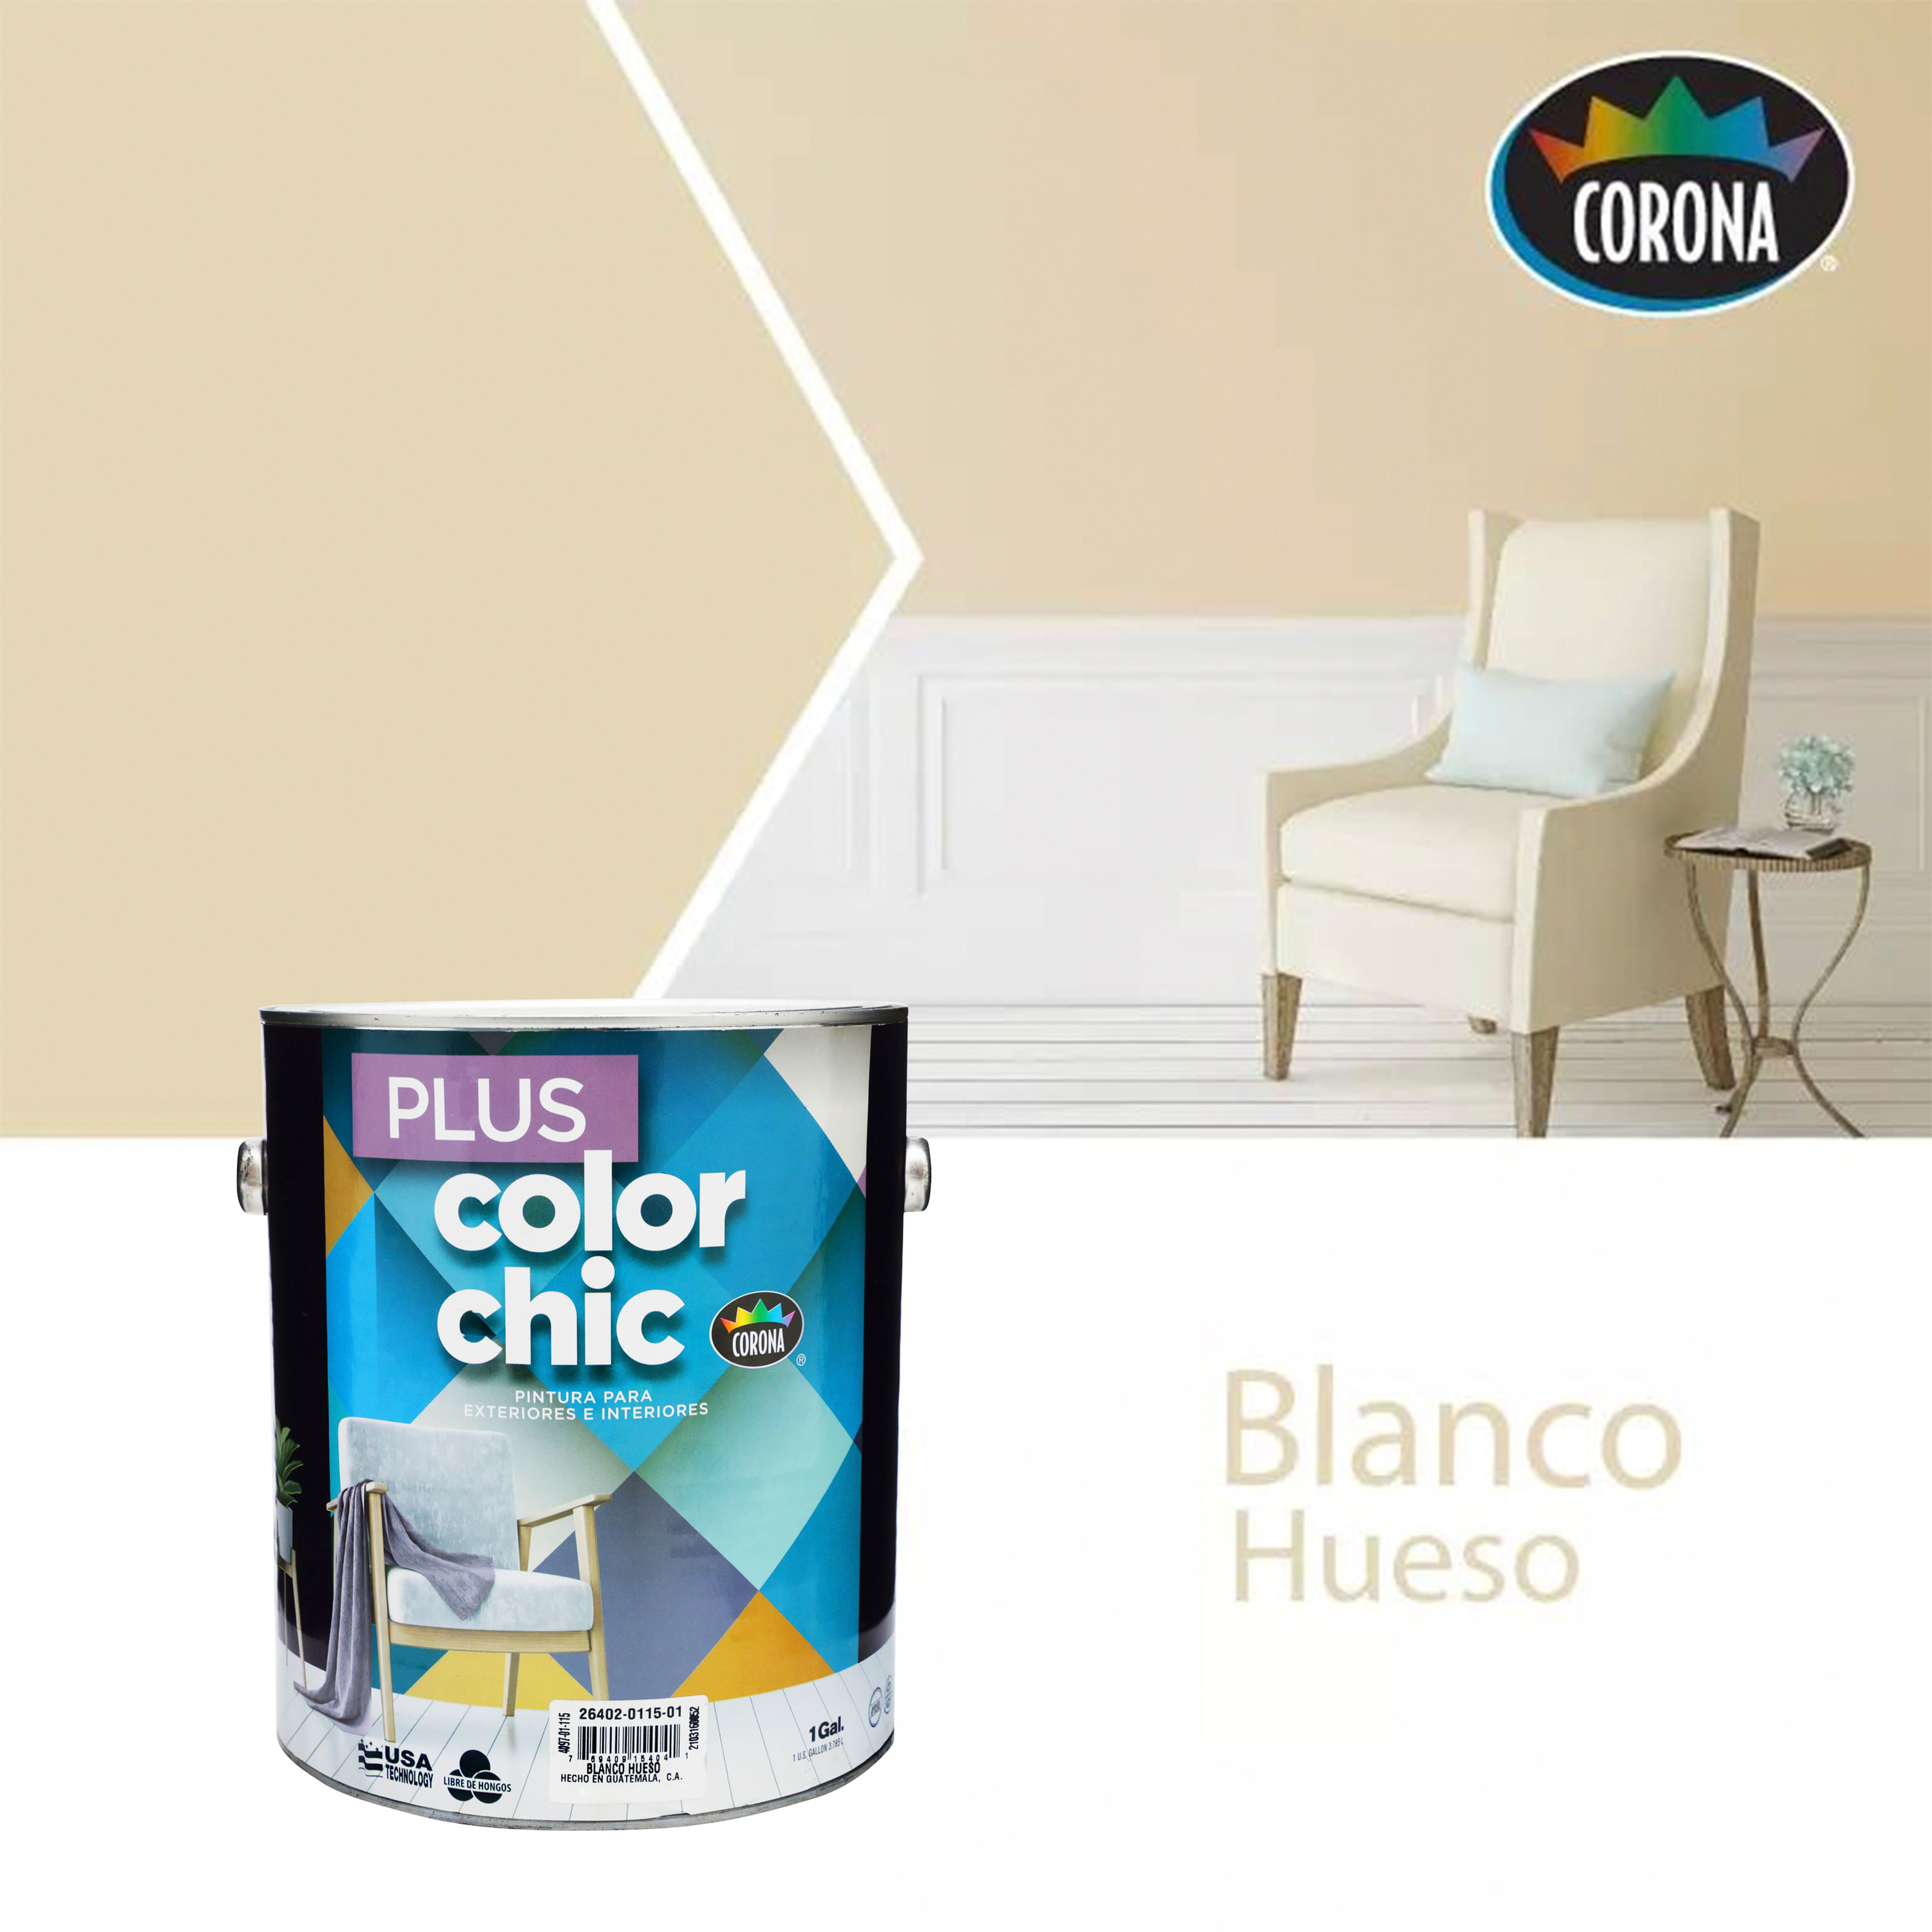 COLORS, 🌈 • ◾ Pintura Latex Interior ◾ Colores listos para usar ◾  Variedad de opciones: Vainilla, Guinda, Manzana, Eucaliptus, Arrecife,  Hematita ⠀ 🔴